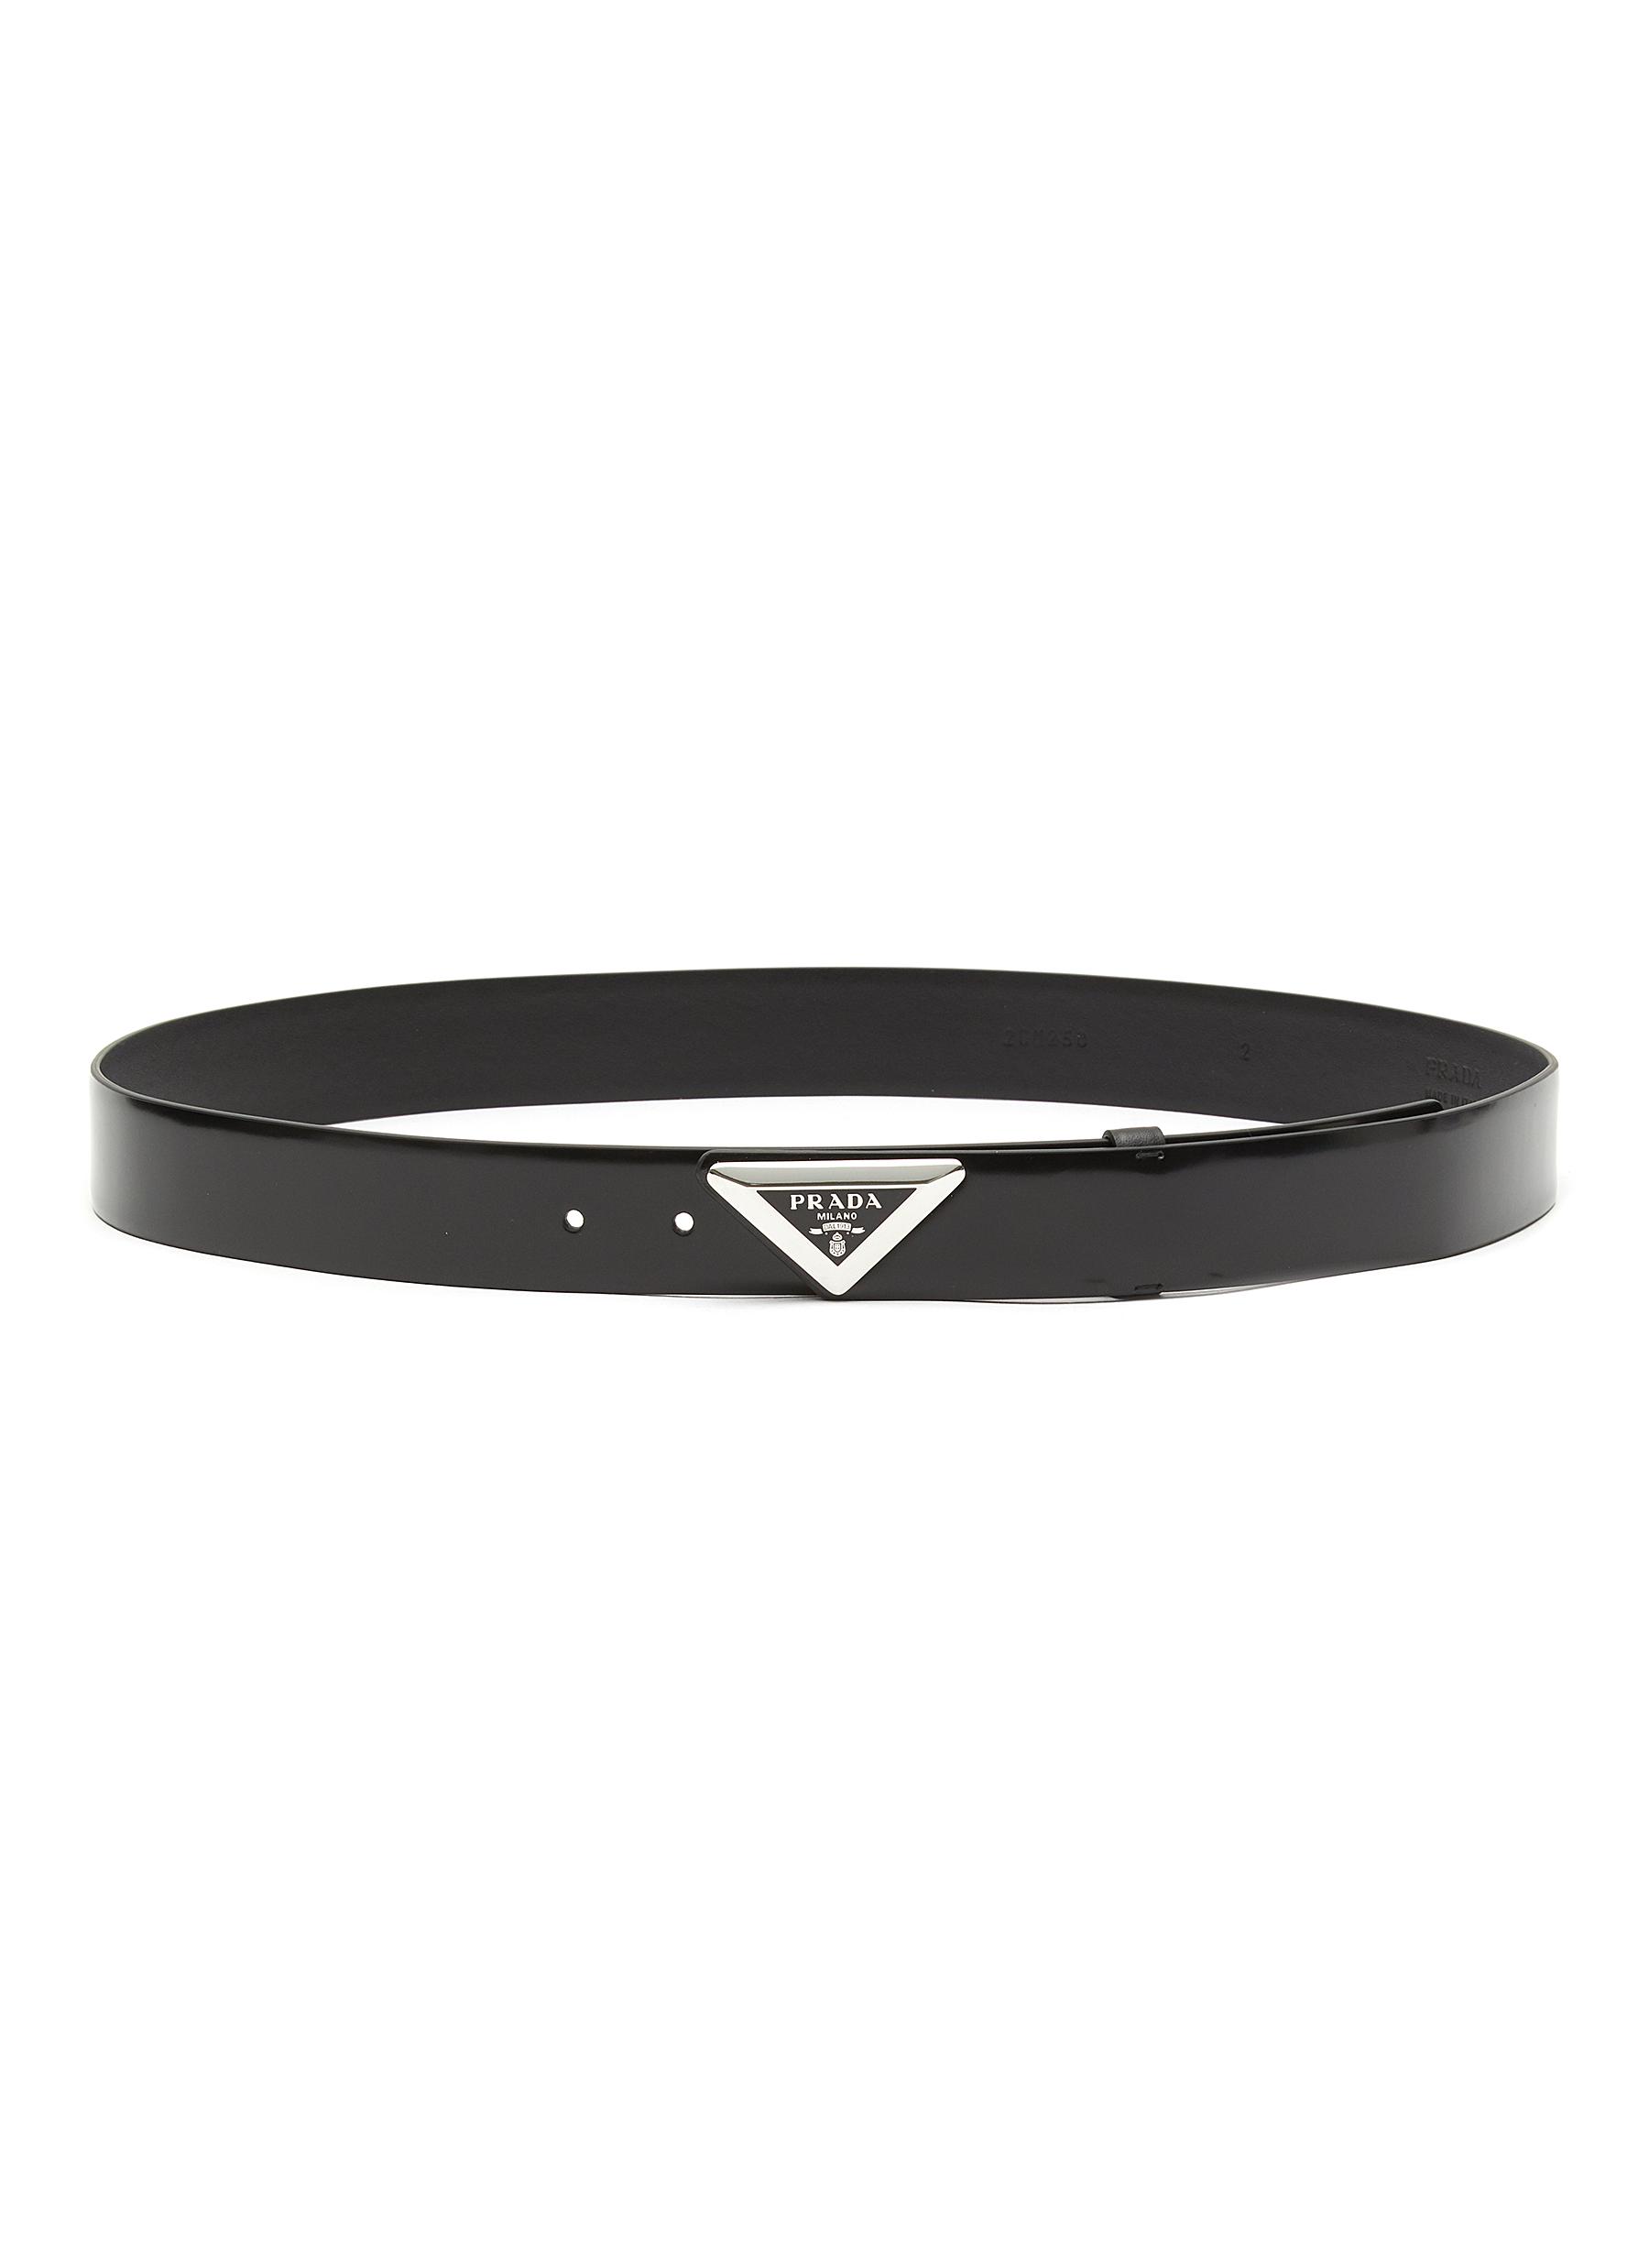 PRADA | Triangular Metal Logo Leather Belt | Men | Lane Crawford